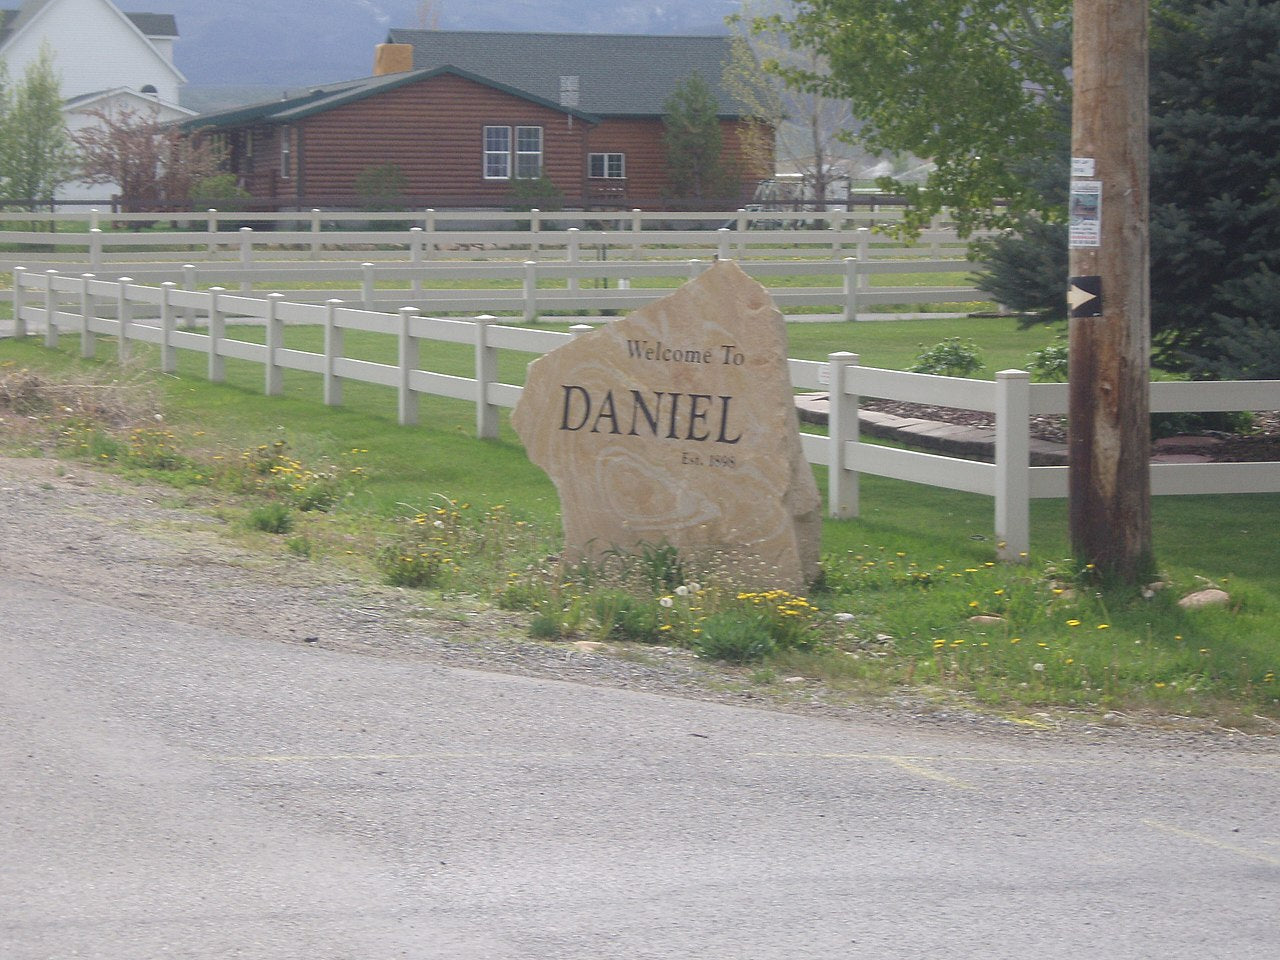 Haus and Hues in Daniel